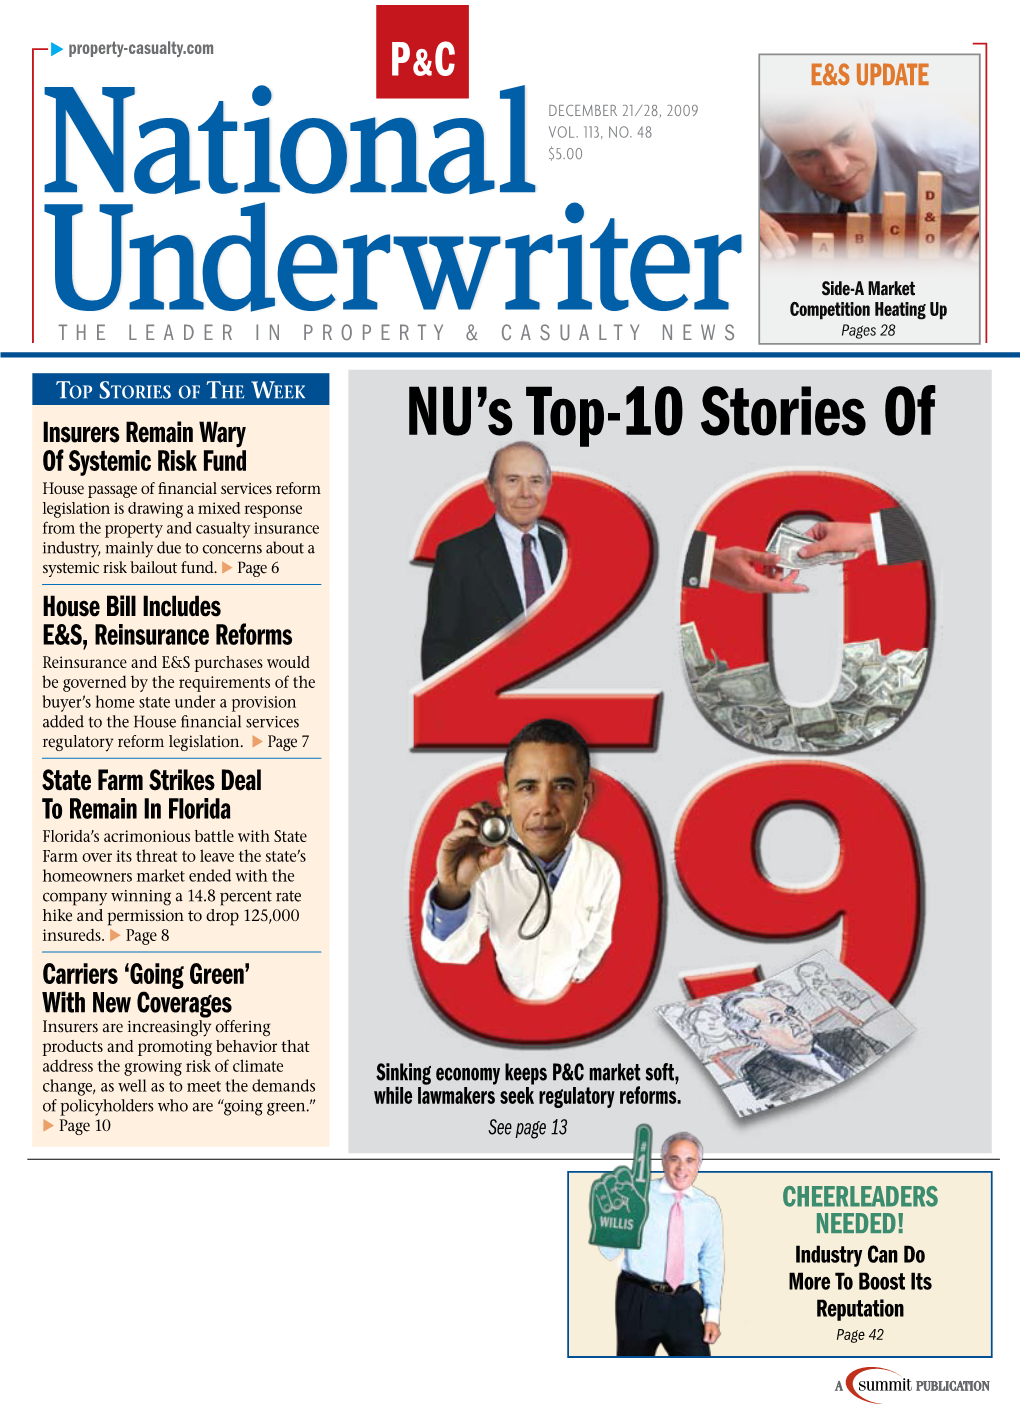 NU's Top-10 Stories Of